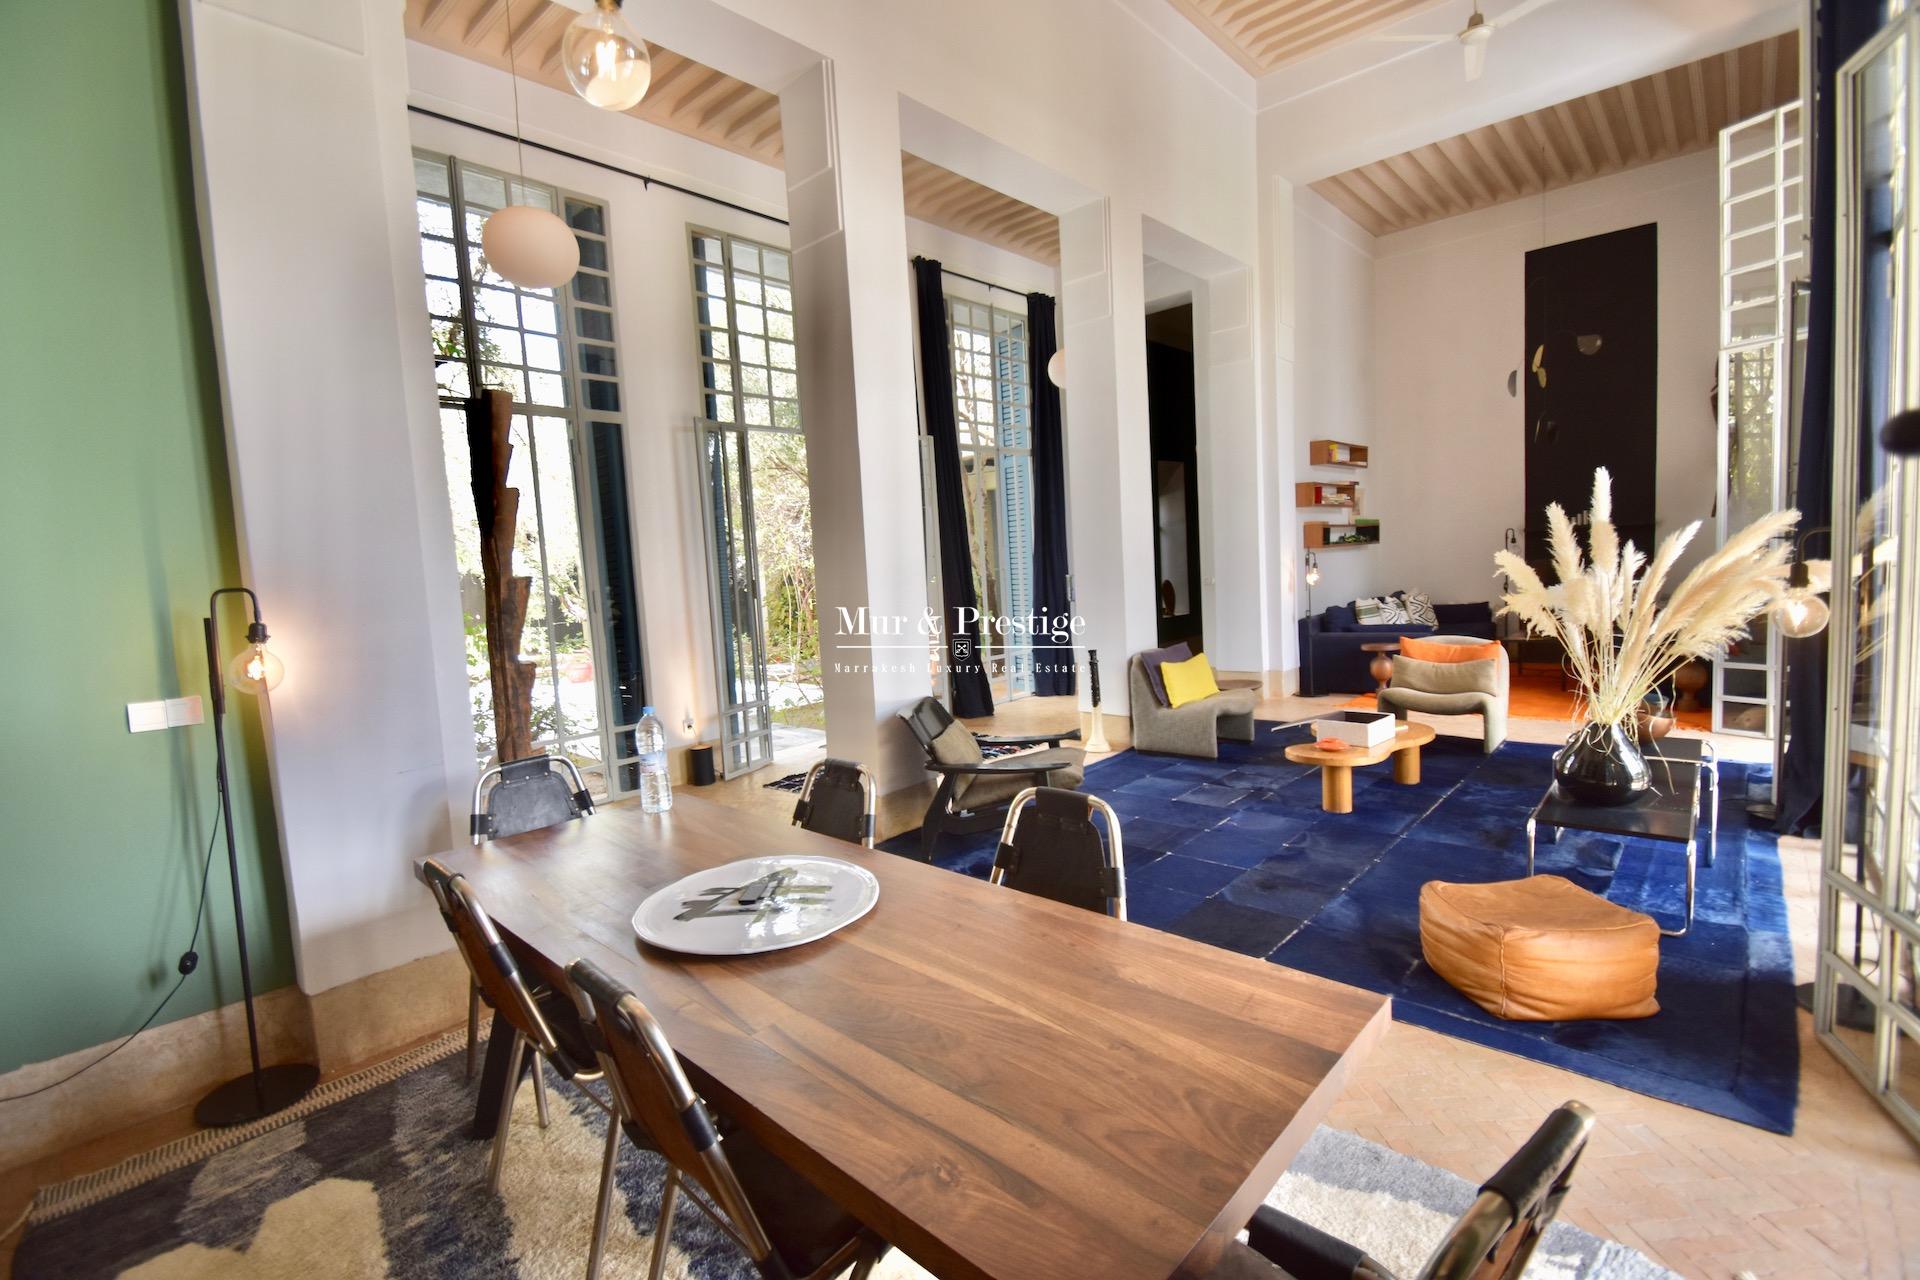 Maison de prestige à louer à Marrakech - Agence Immobilière